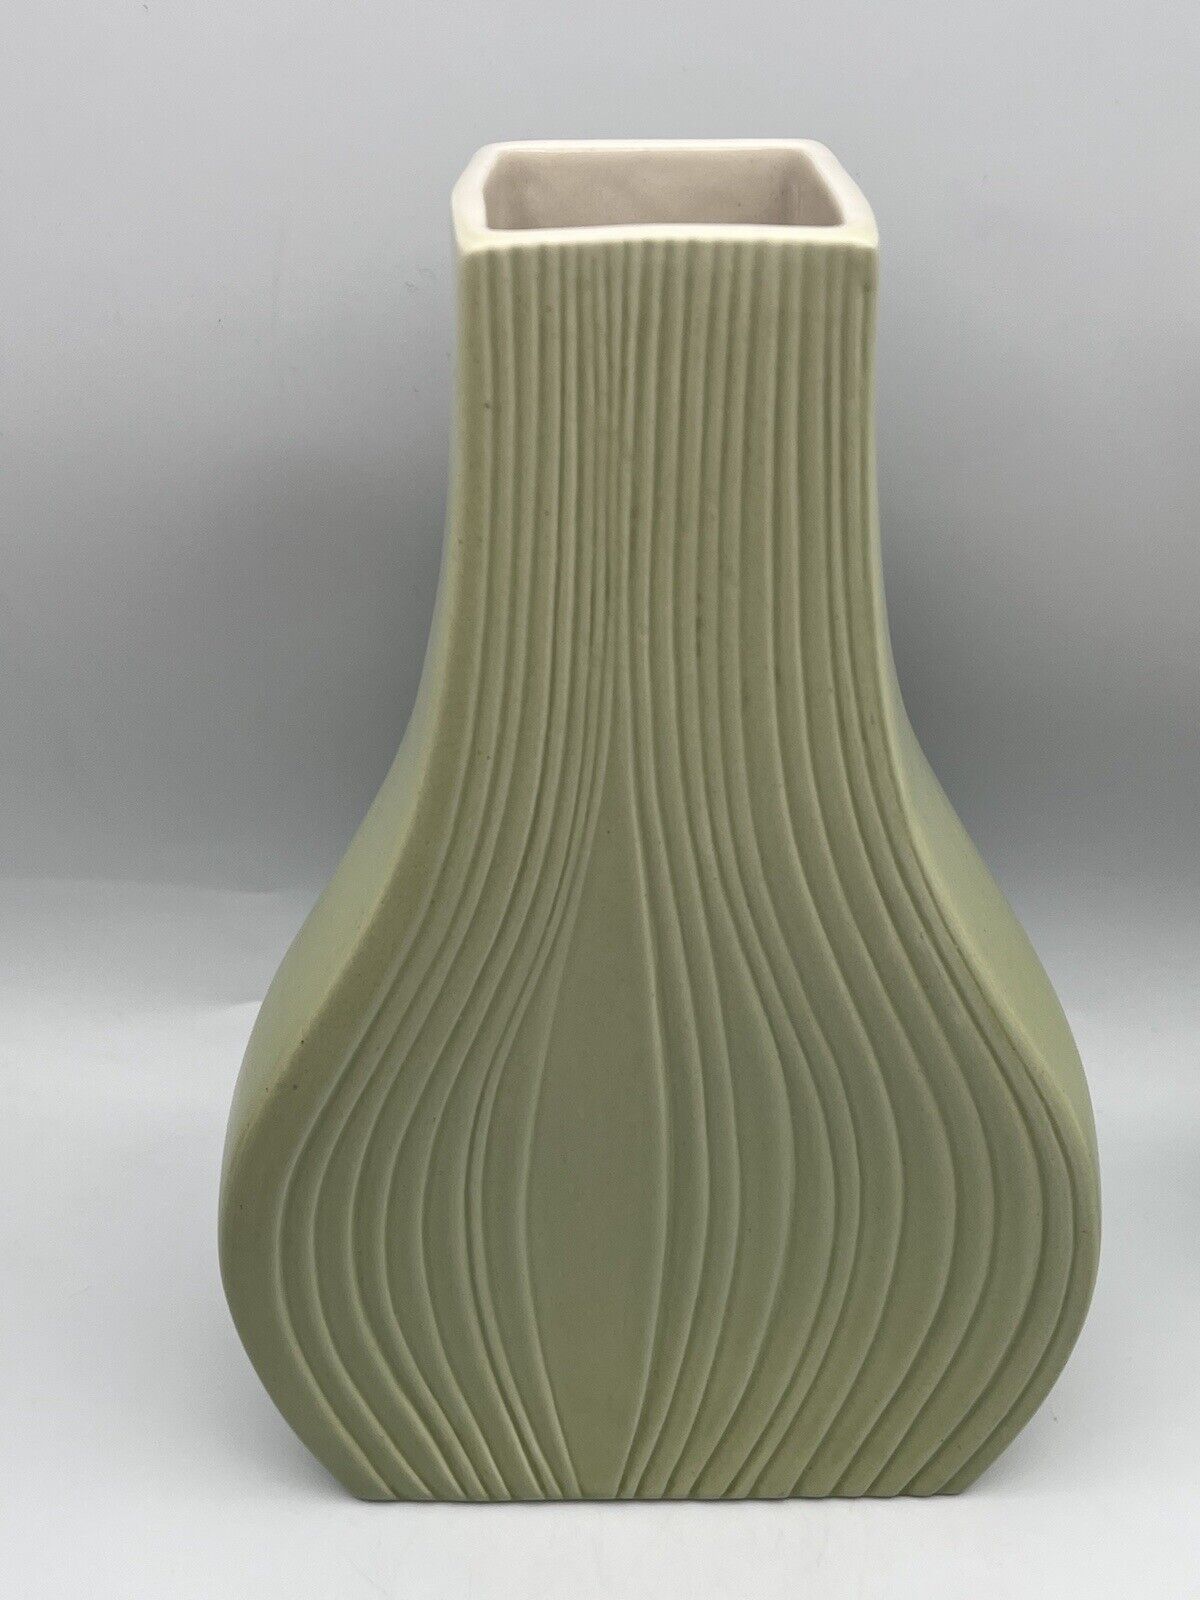 Naaman Art Line Onion Vase Avocado Green White Inside Modernist Porcelain Vase